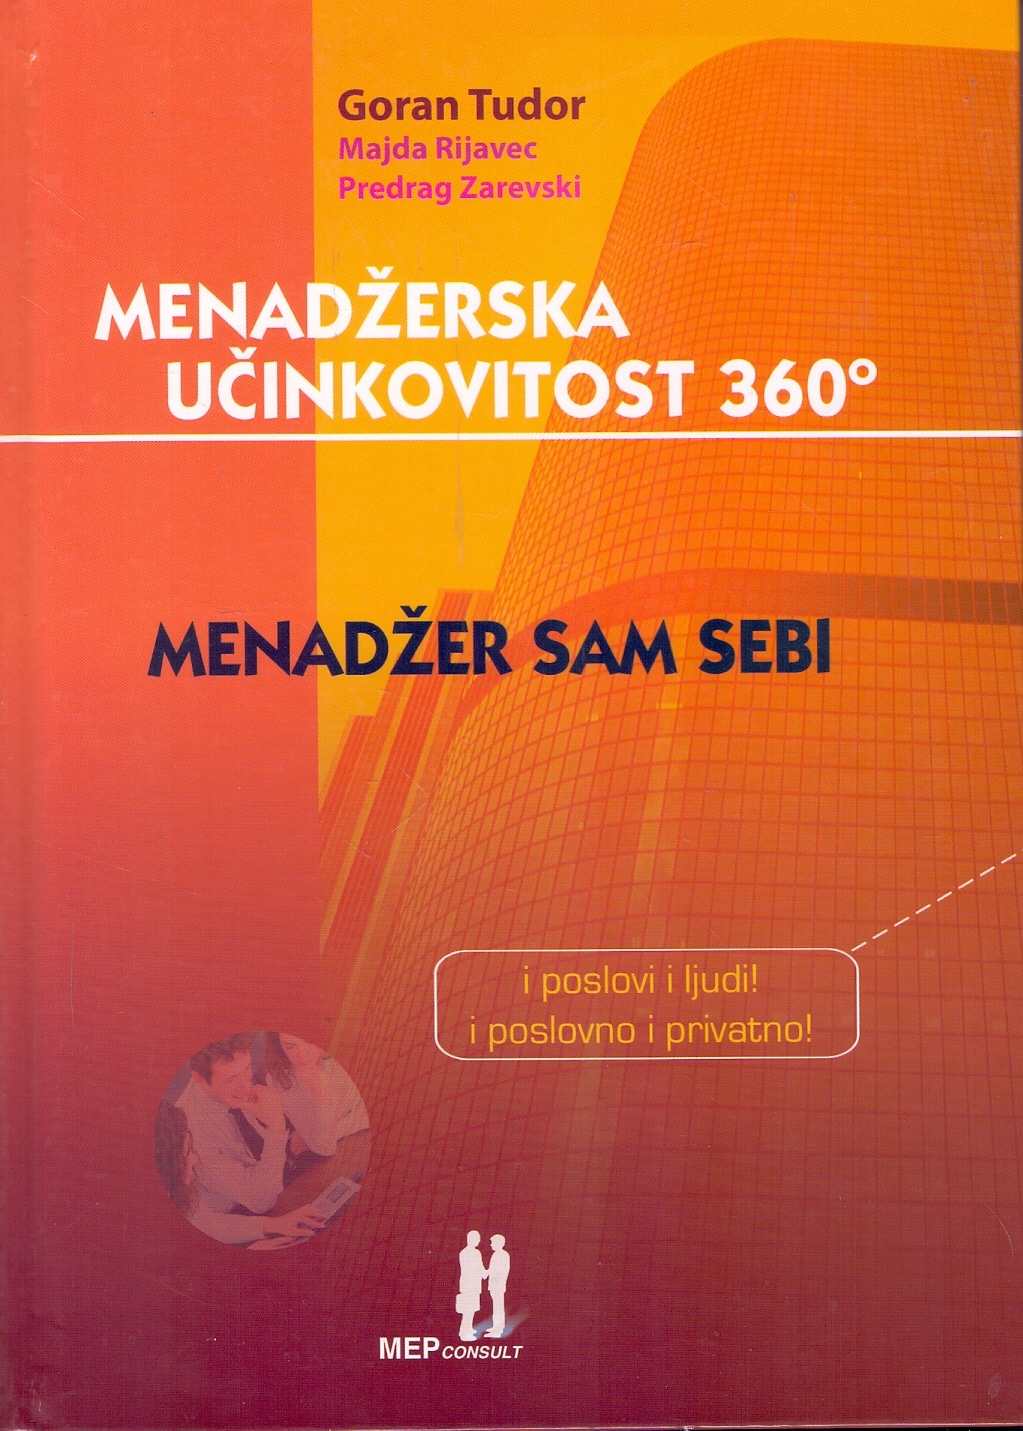 Menadžerska učinkovitost 360 º Goran Tudor, Majda Rijavec i Predrag Zarevski